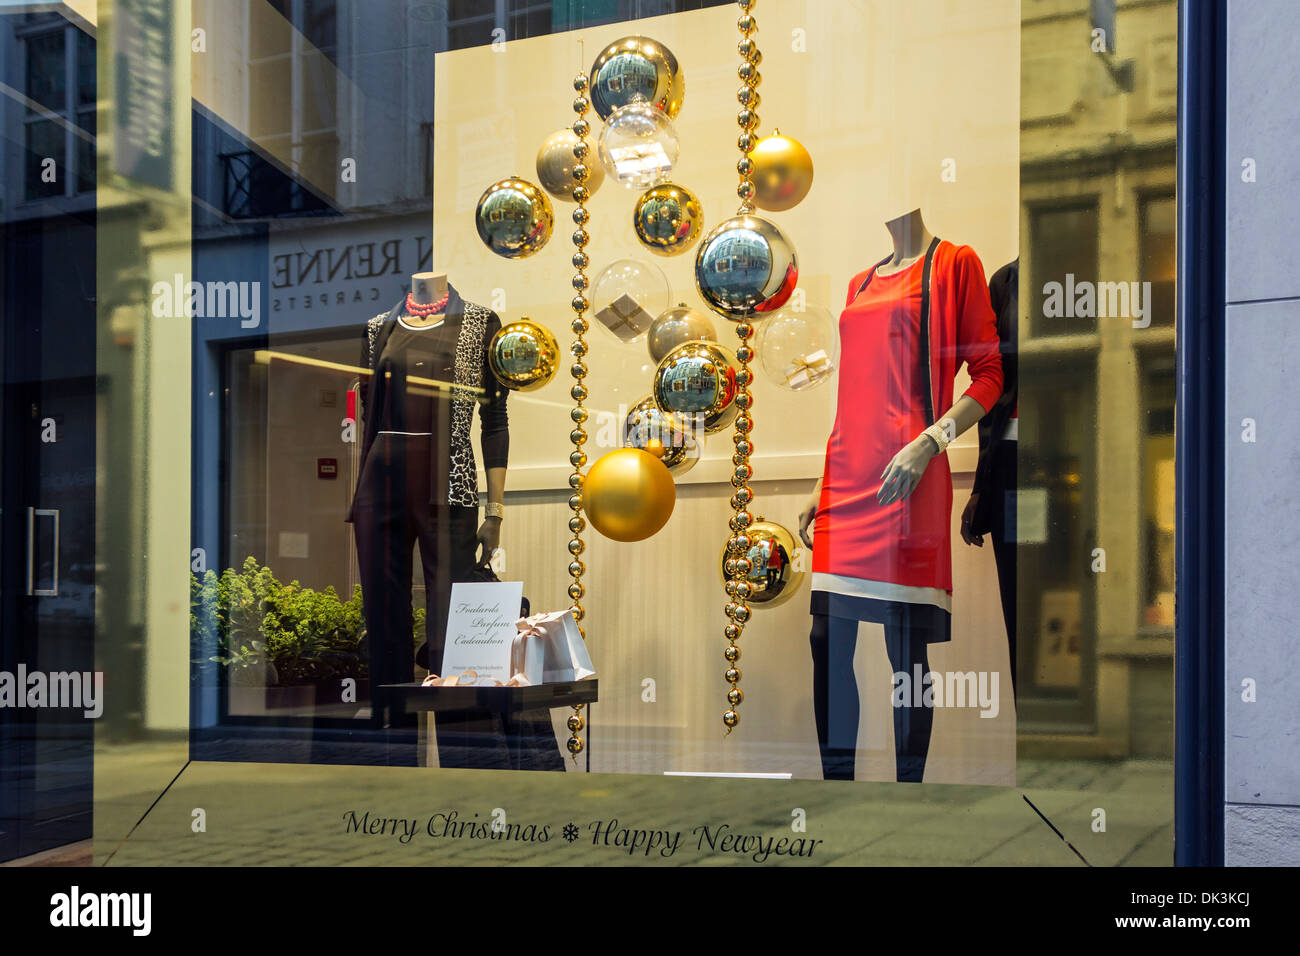 Weihnachtsschmuck im Schaufenster der Kleidung aufbewahren zeigen festliche Kleider in Einkaufsstraße im winter Stockfoto